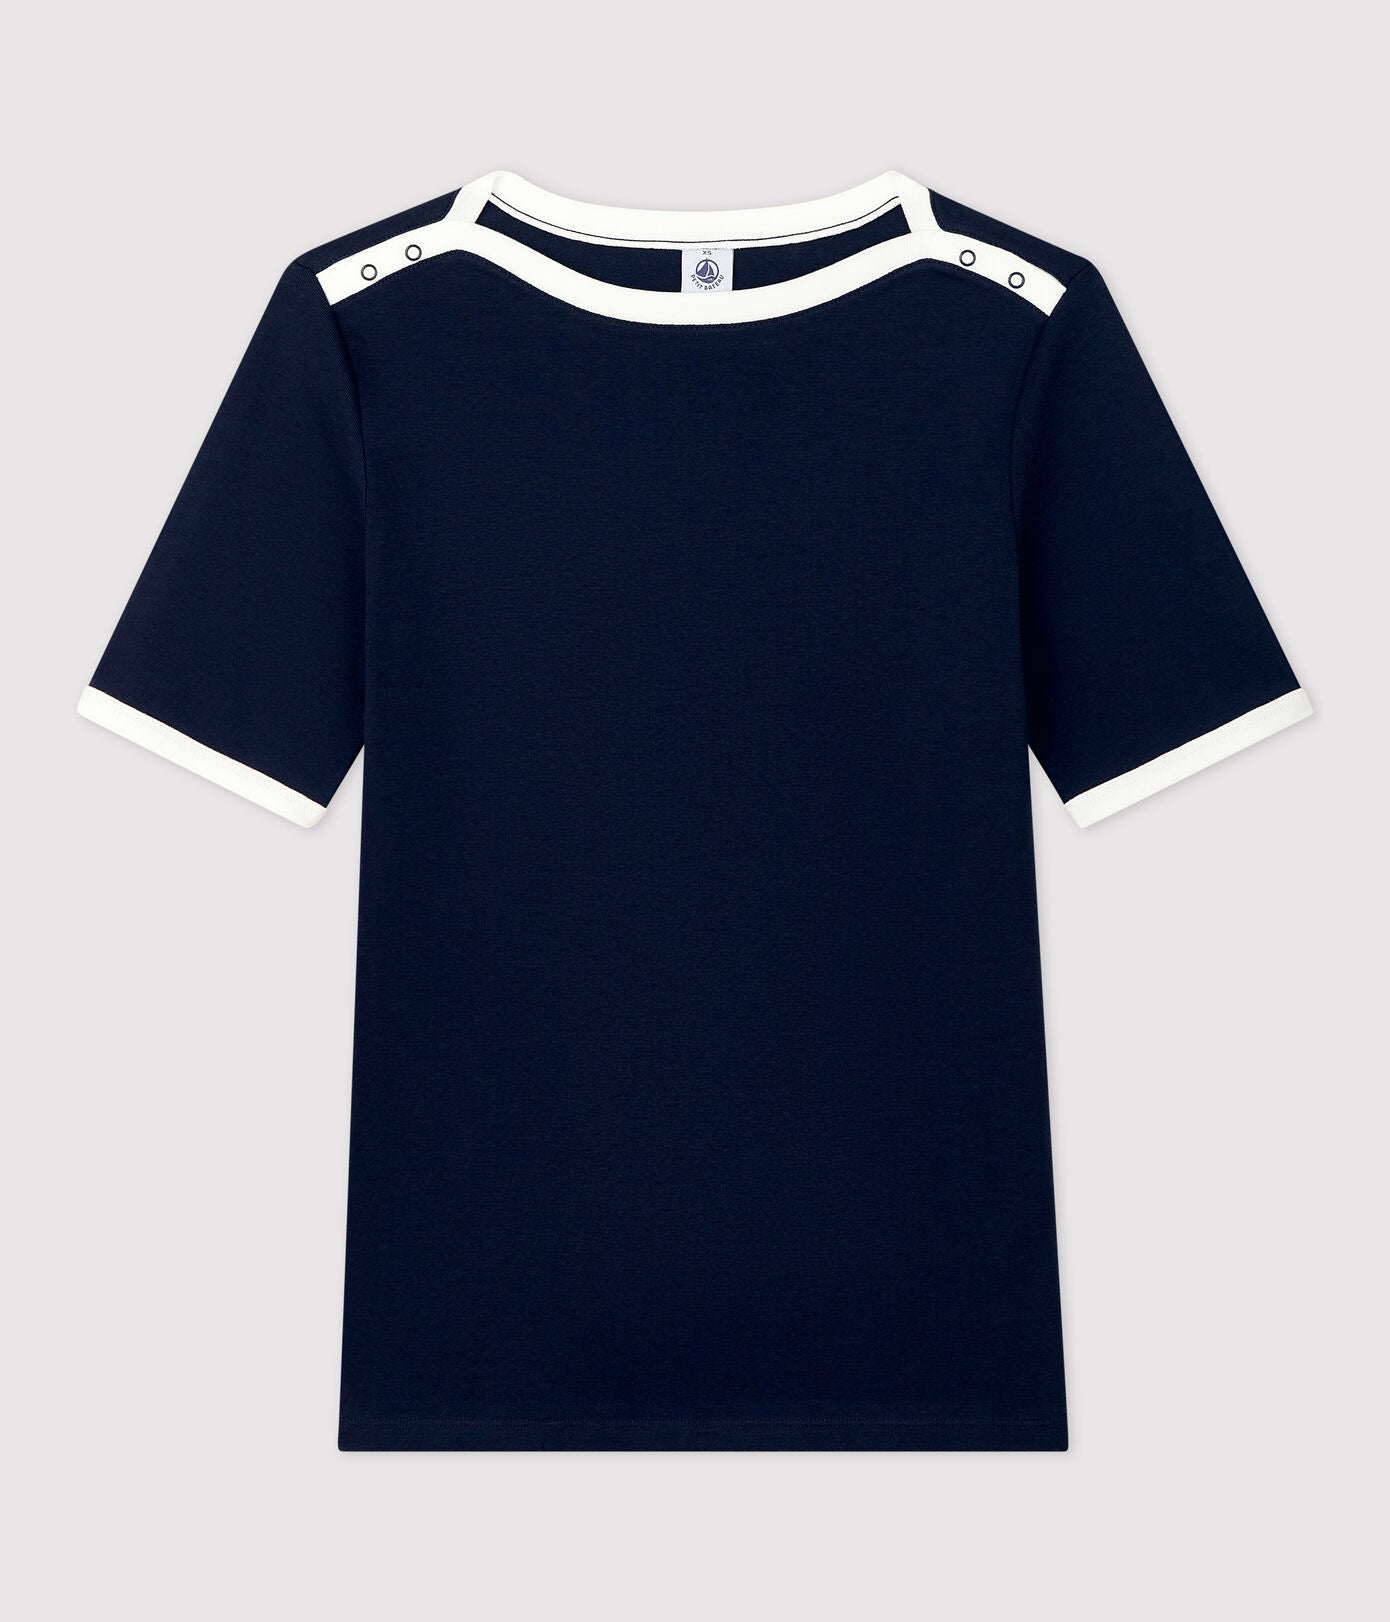 Girls Navy Cotton T-Shirt